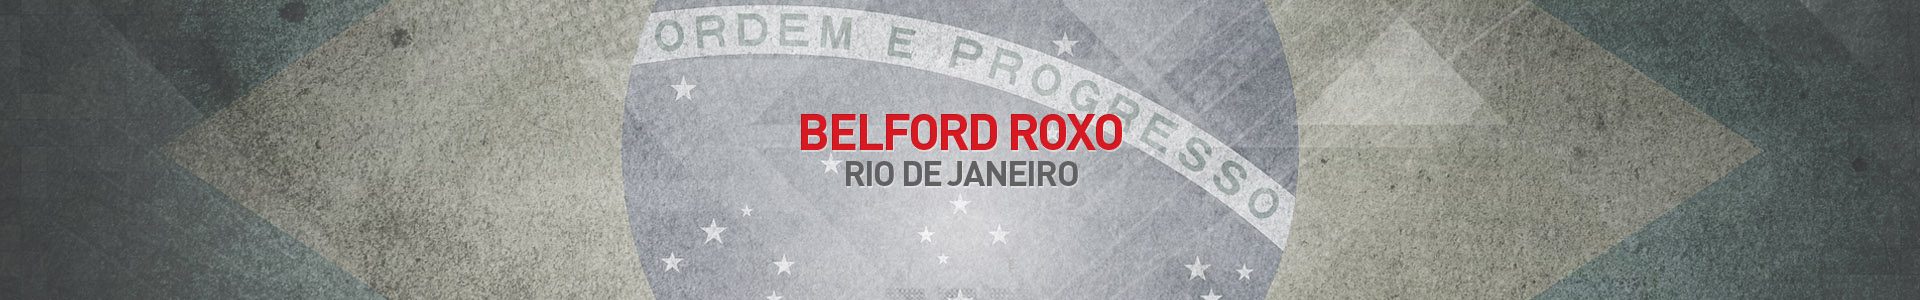 Topo-Cidades-Belford-Roxo-RJ-SBA